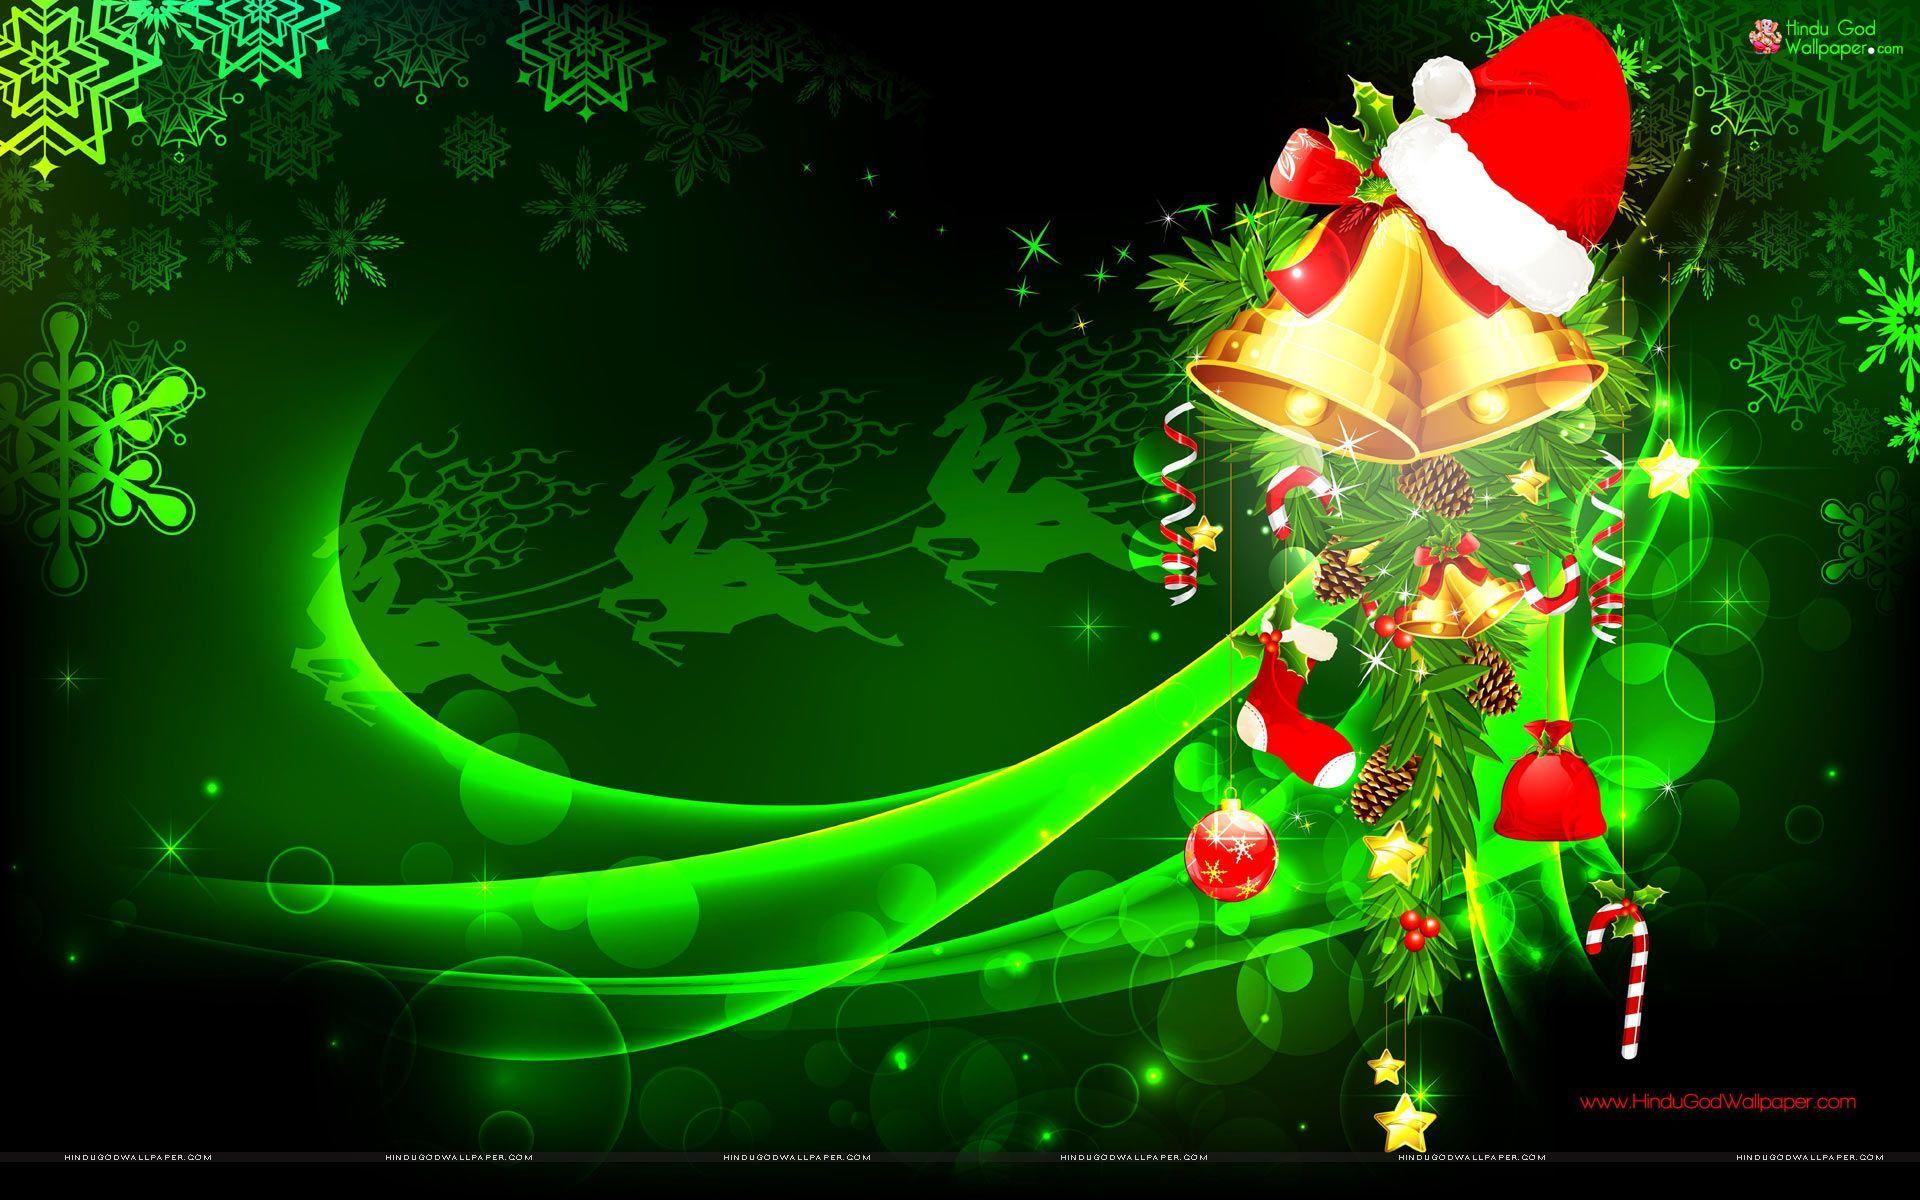 Green Christmas Wallpaper for Desktop Free Download. Christmas wallpaper background, Christmas wallpaper, Christmas wallpaper free